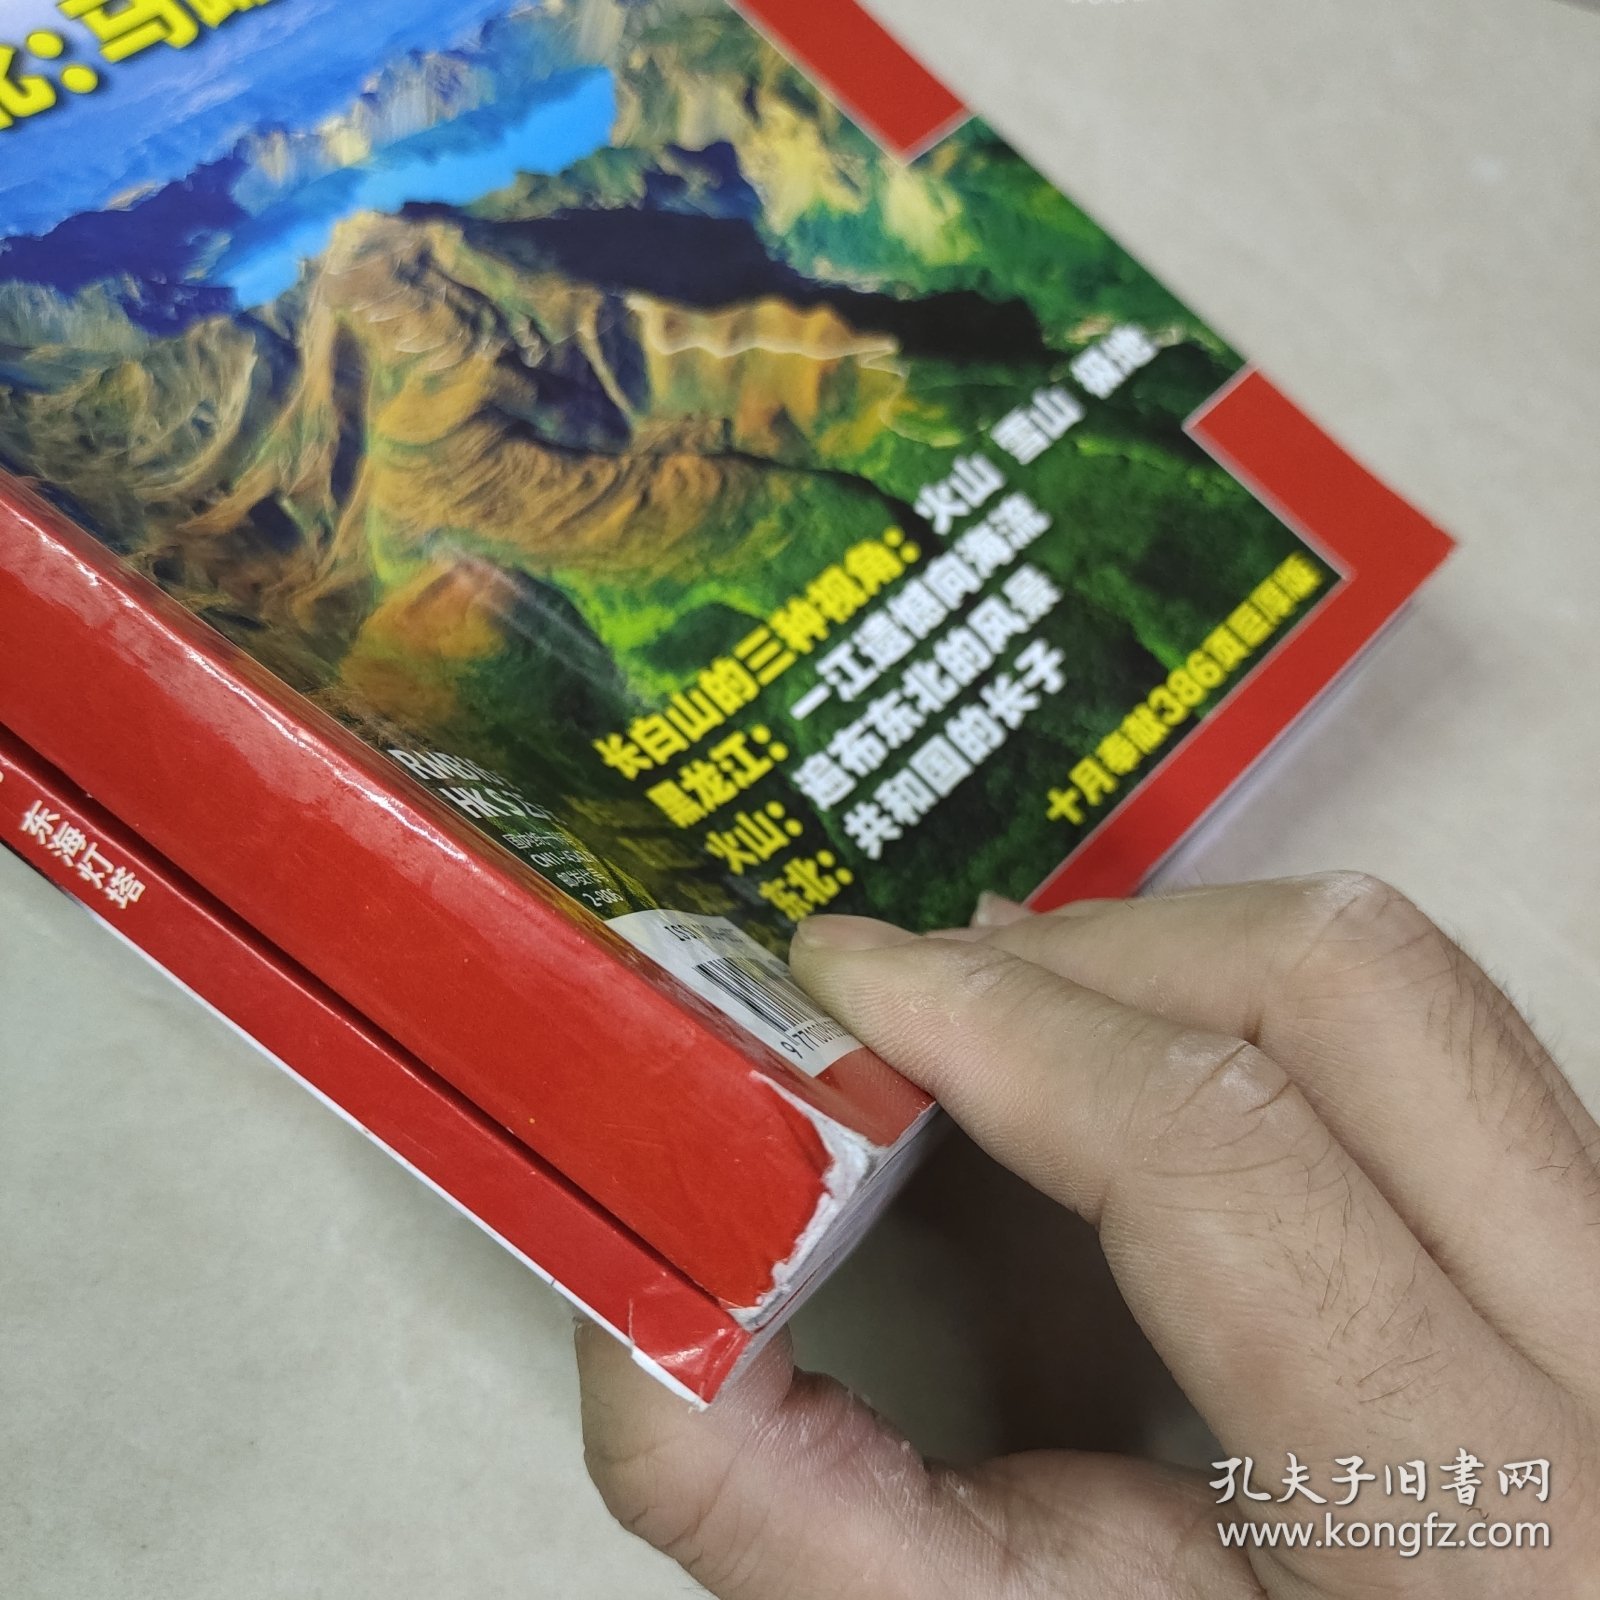 中国国家地理 2008 4 10（2册合售）